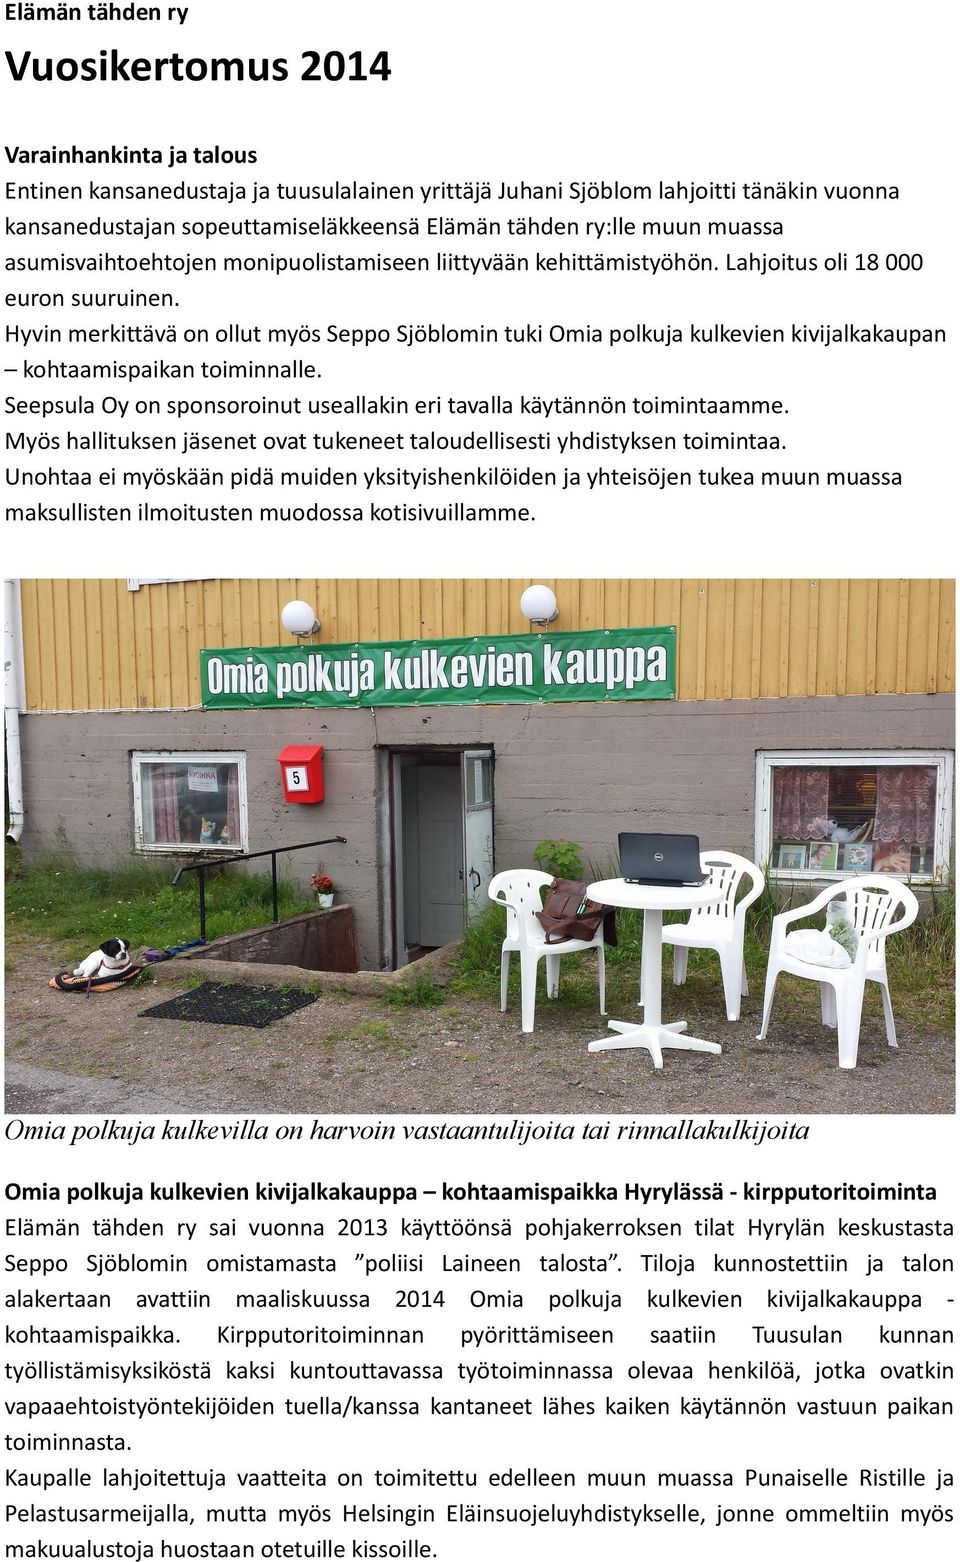 Hyvin merkittävä on ollut myös Seppo Sjöblomin tuki Omia polkuja kulkevien kivijalkakaupan kohtaamispaikan toiminnalle. Seepsula Oy on sponsoroinut useallakin eri tavalla käytännön toimintaamme.